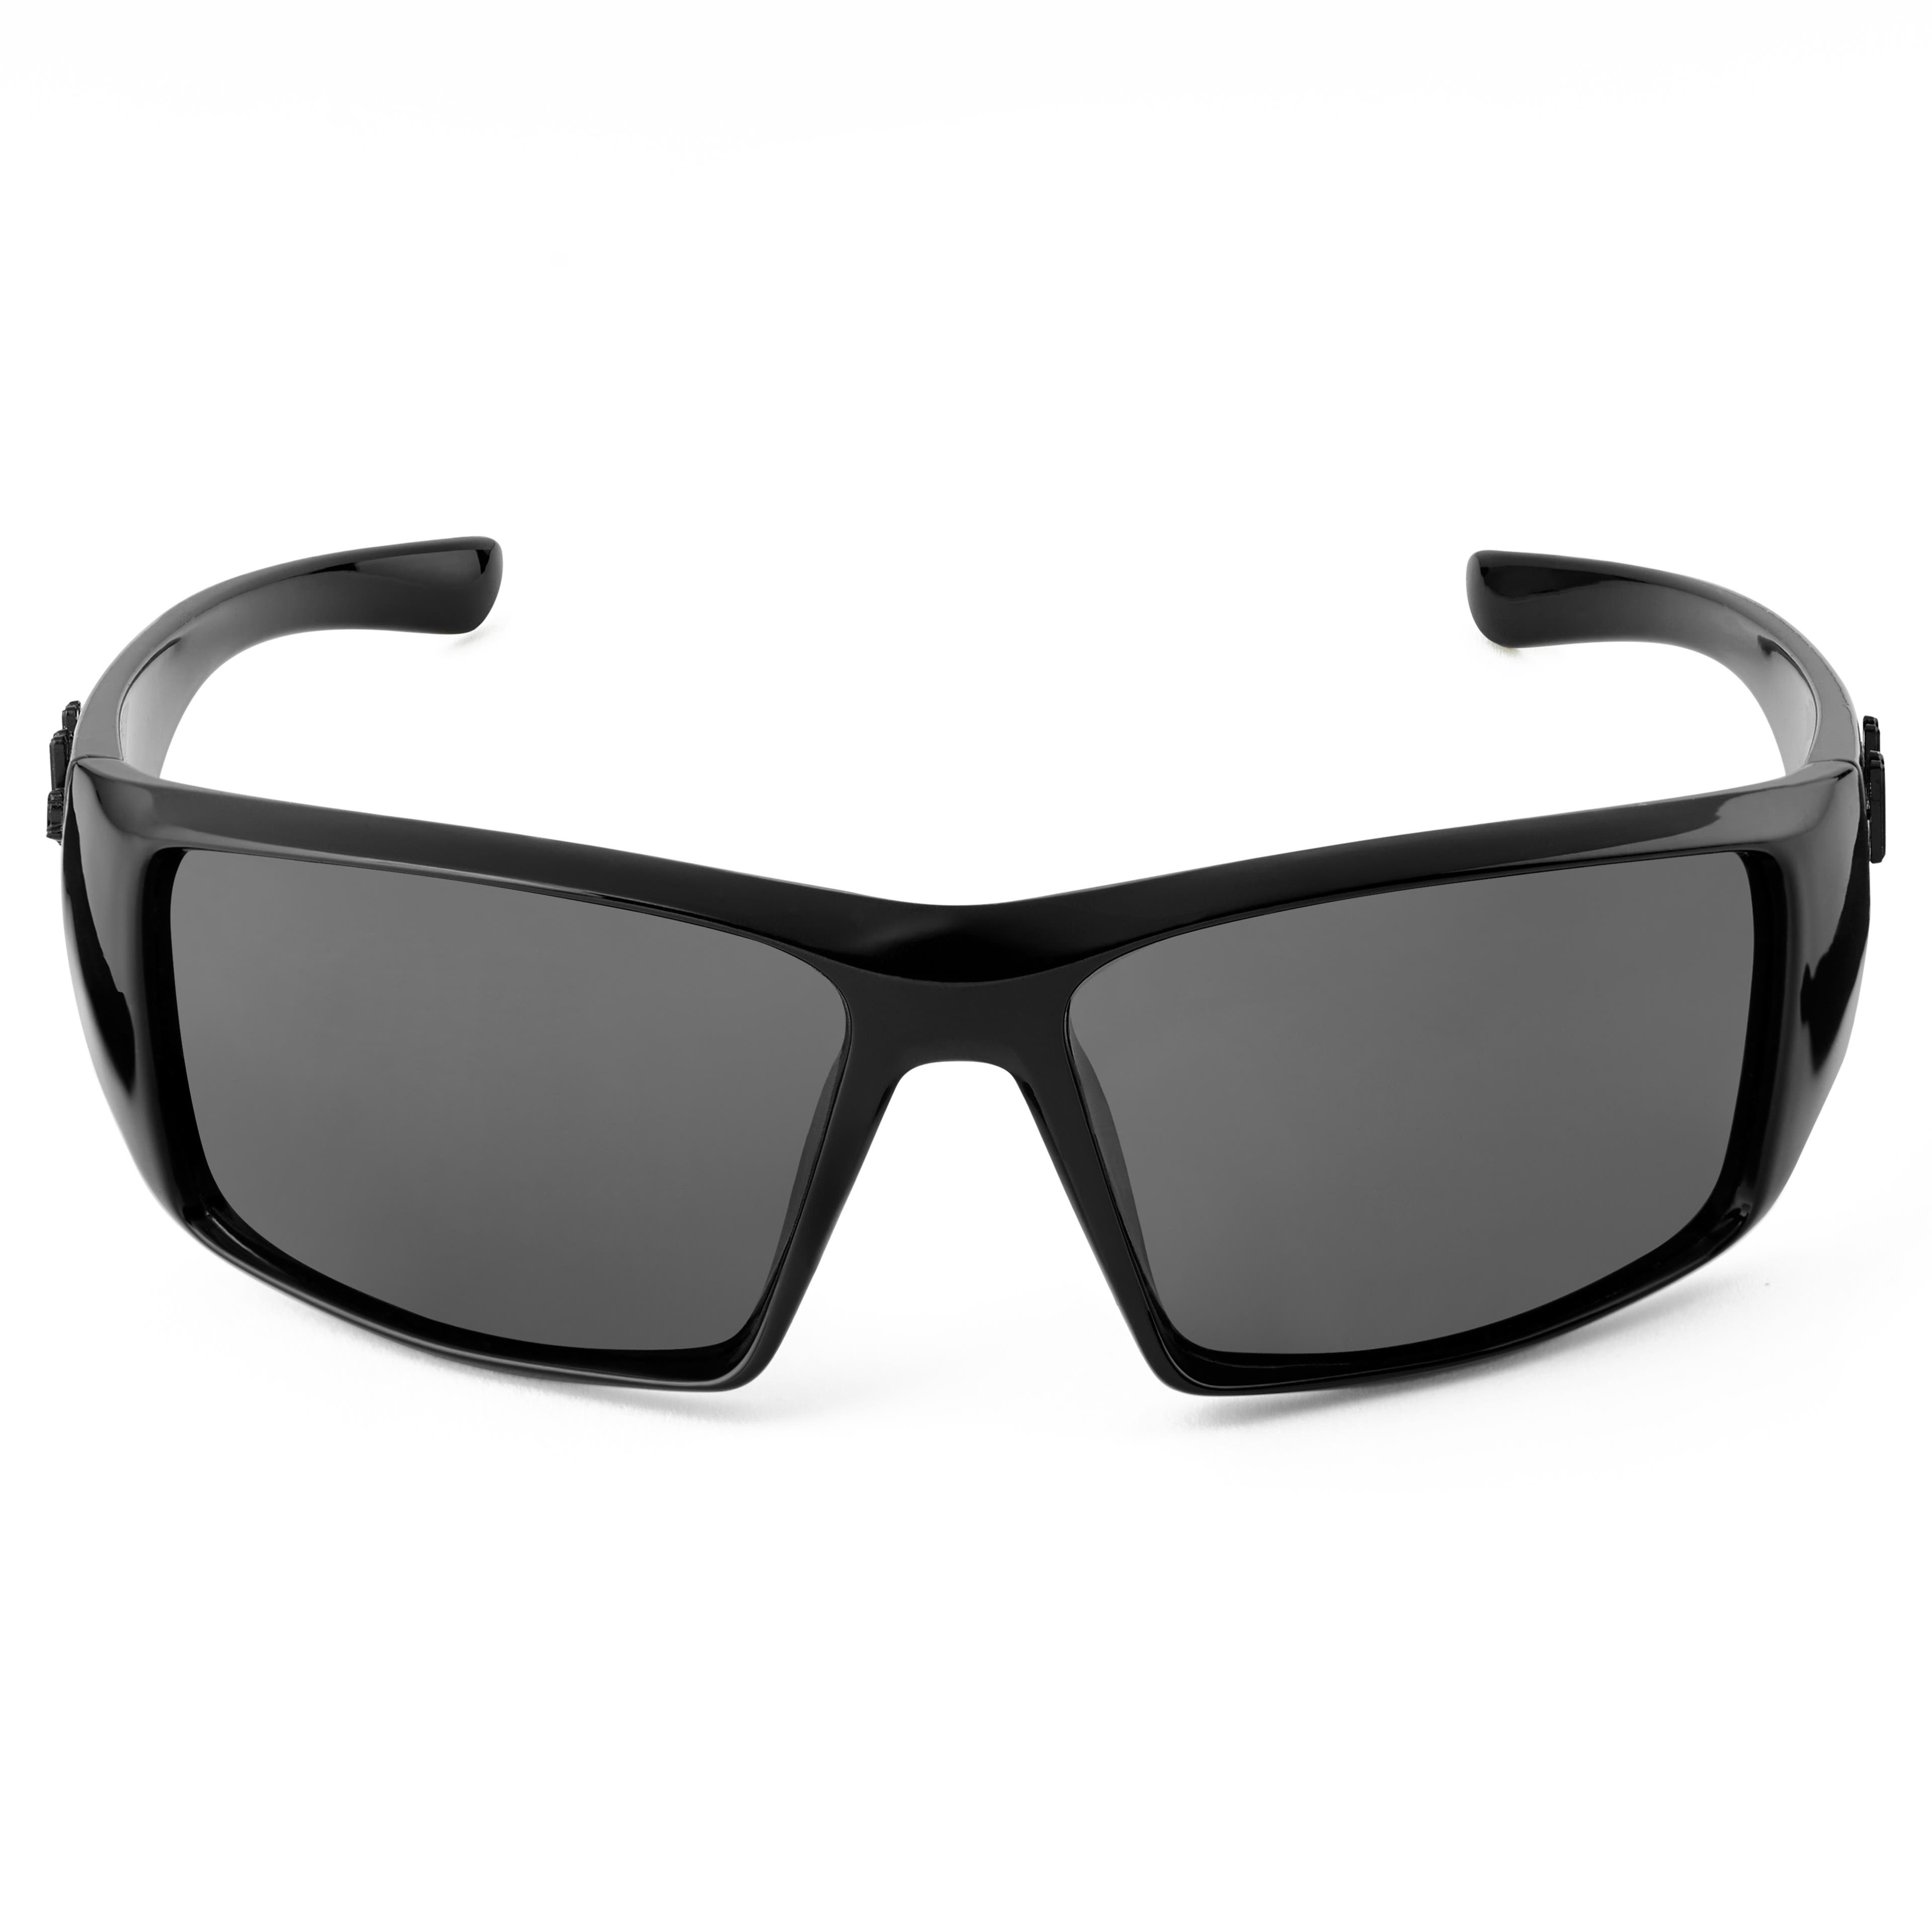 Gafas de sol polarizadas categoría 3,5 en negro y gris Verge Mick